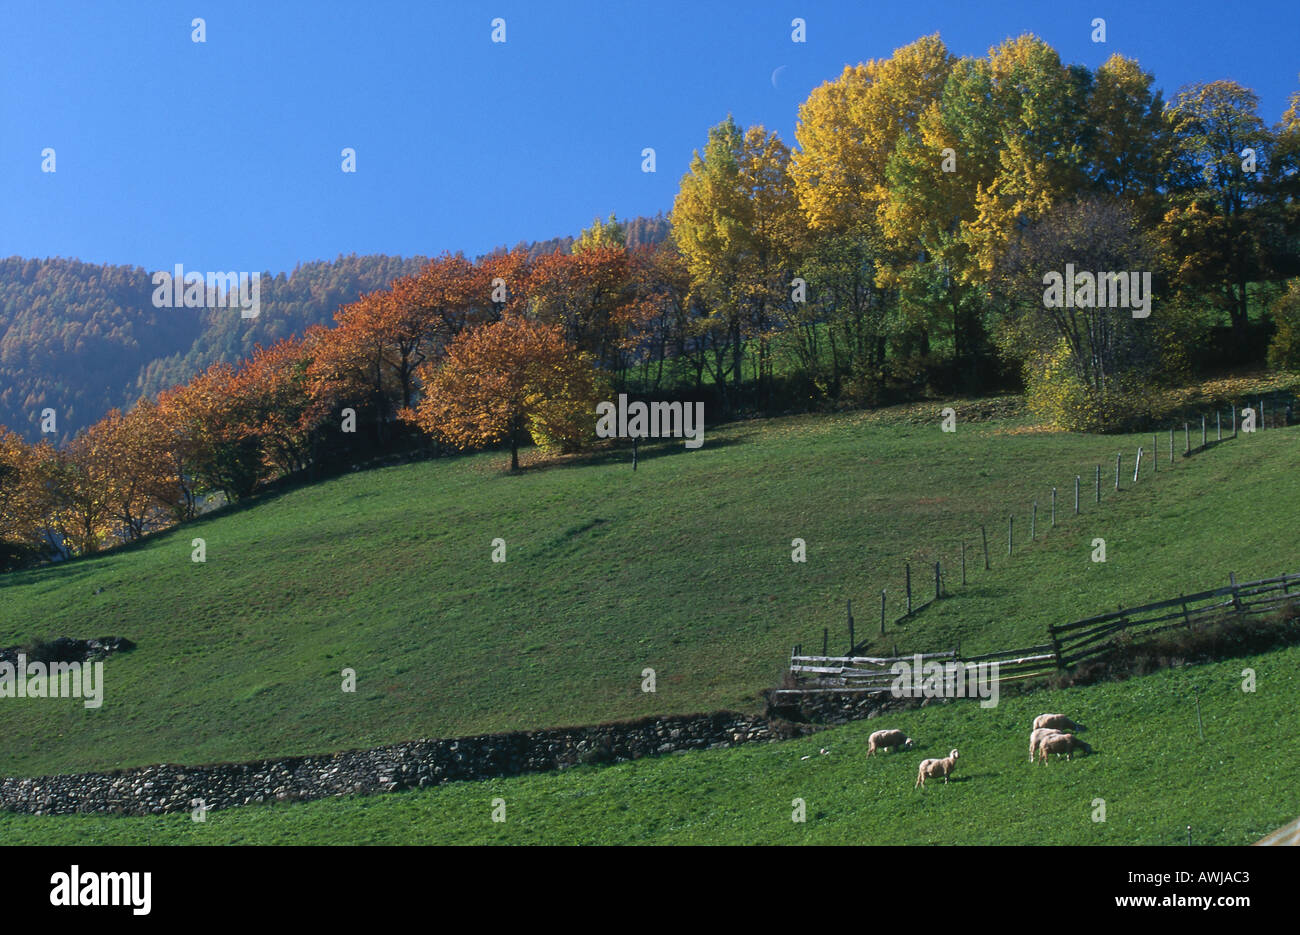 Schafbeweidung auf Gebiet, Martelltal Tal, Alto Adige, Italien Stockfoto